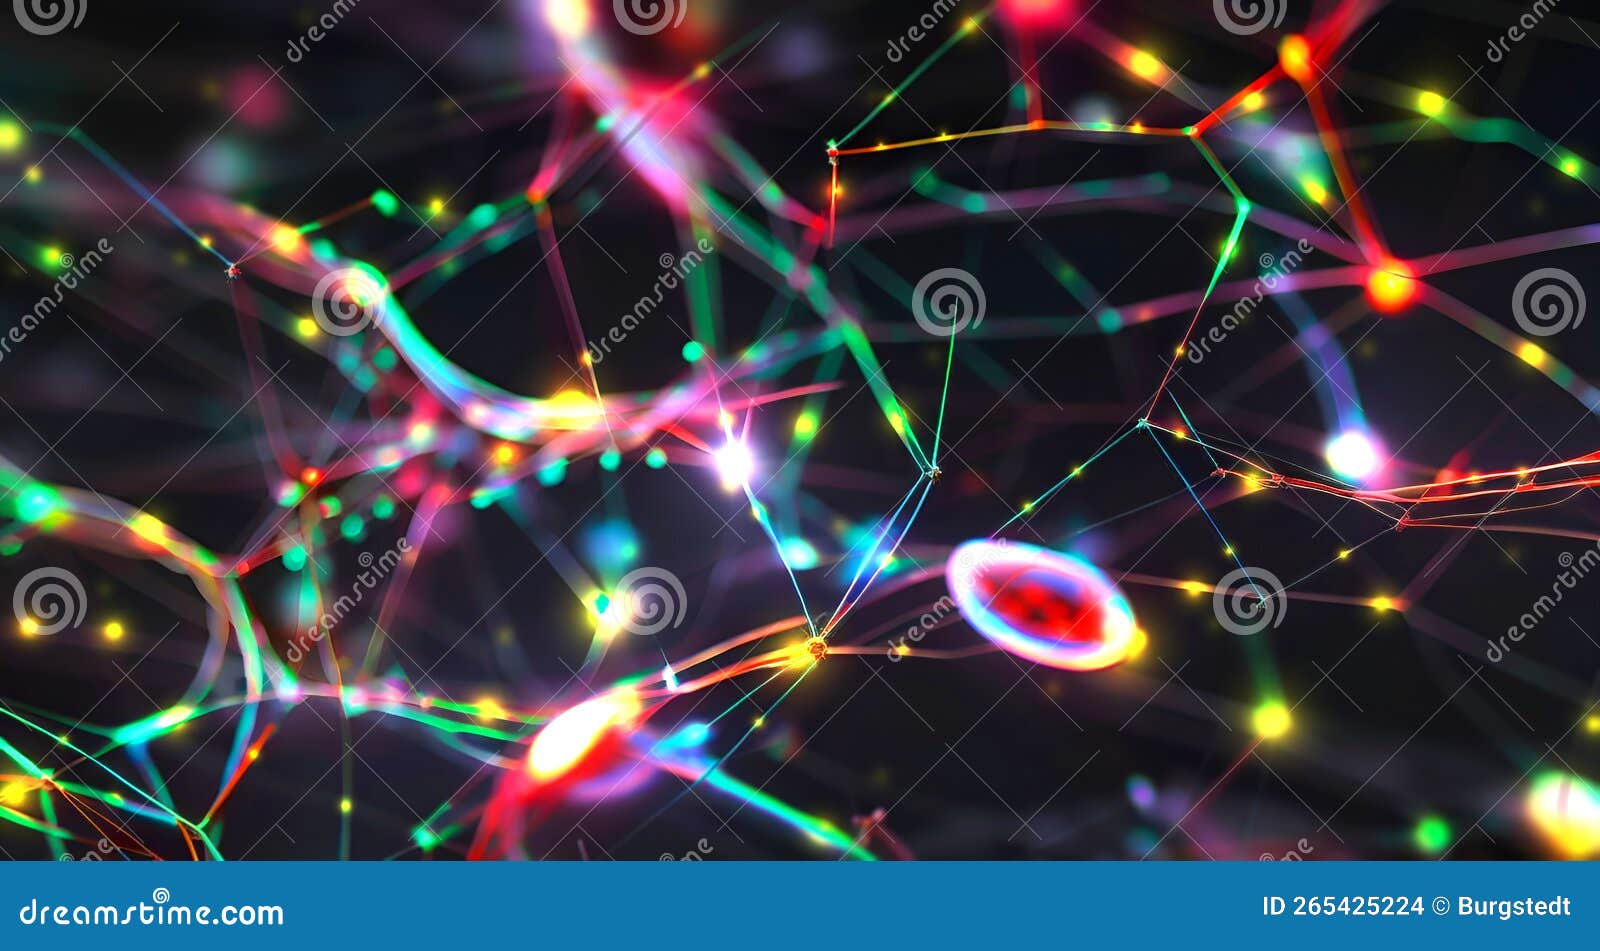 pulsing signals between nerve cells inside a neuronal network